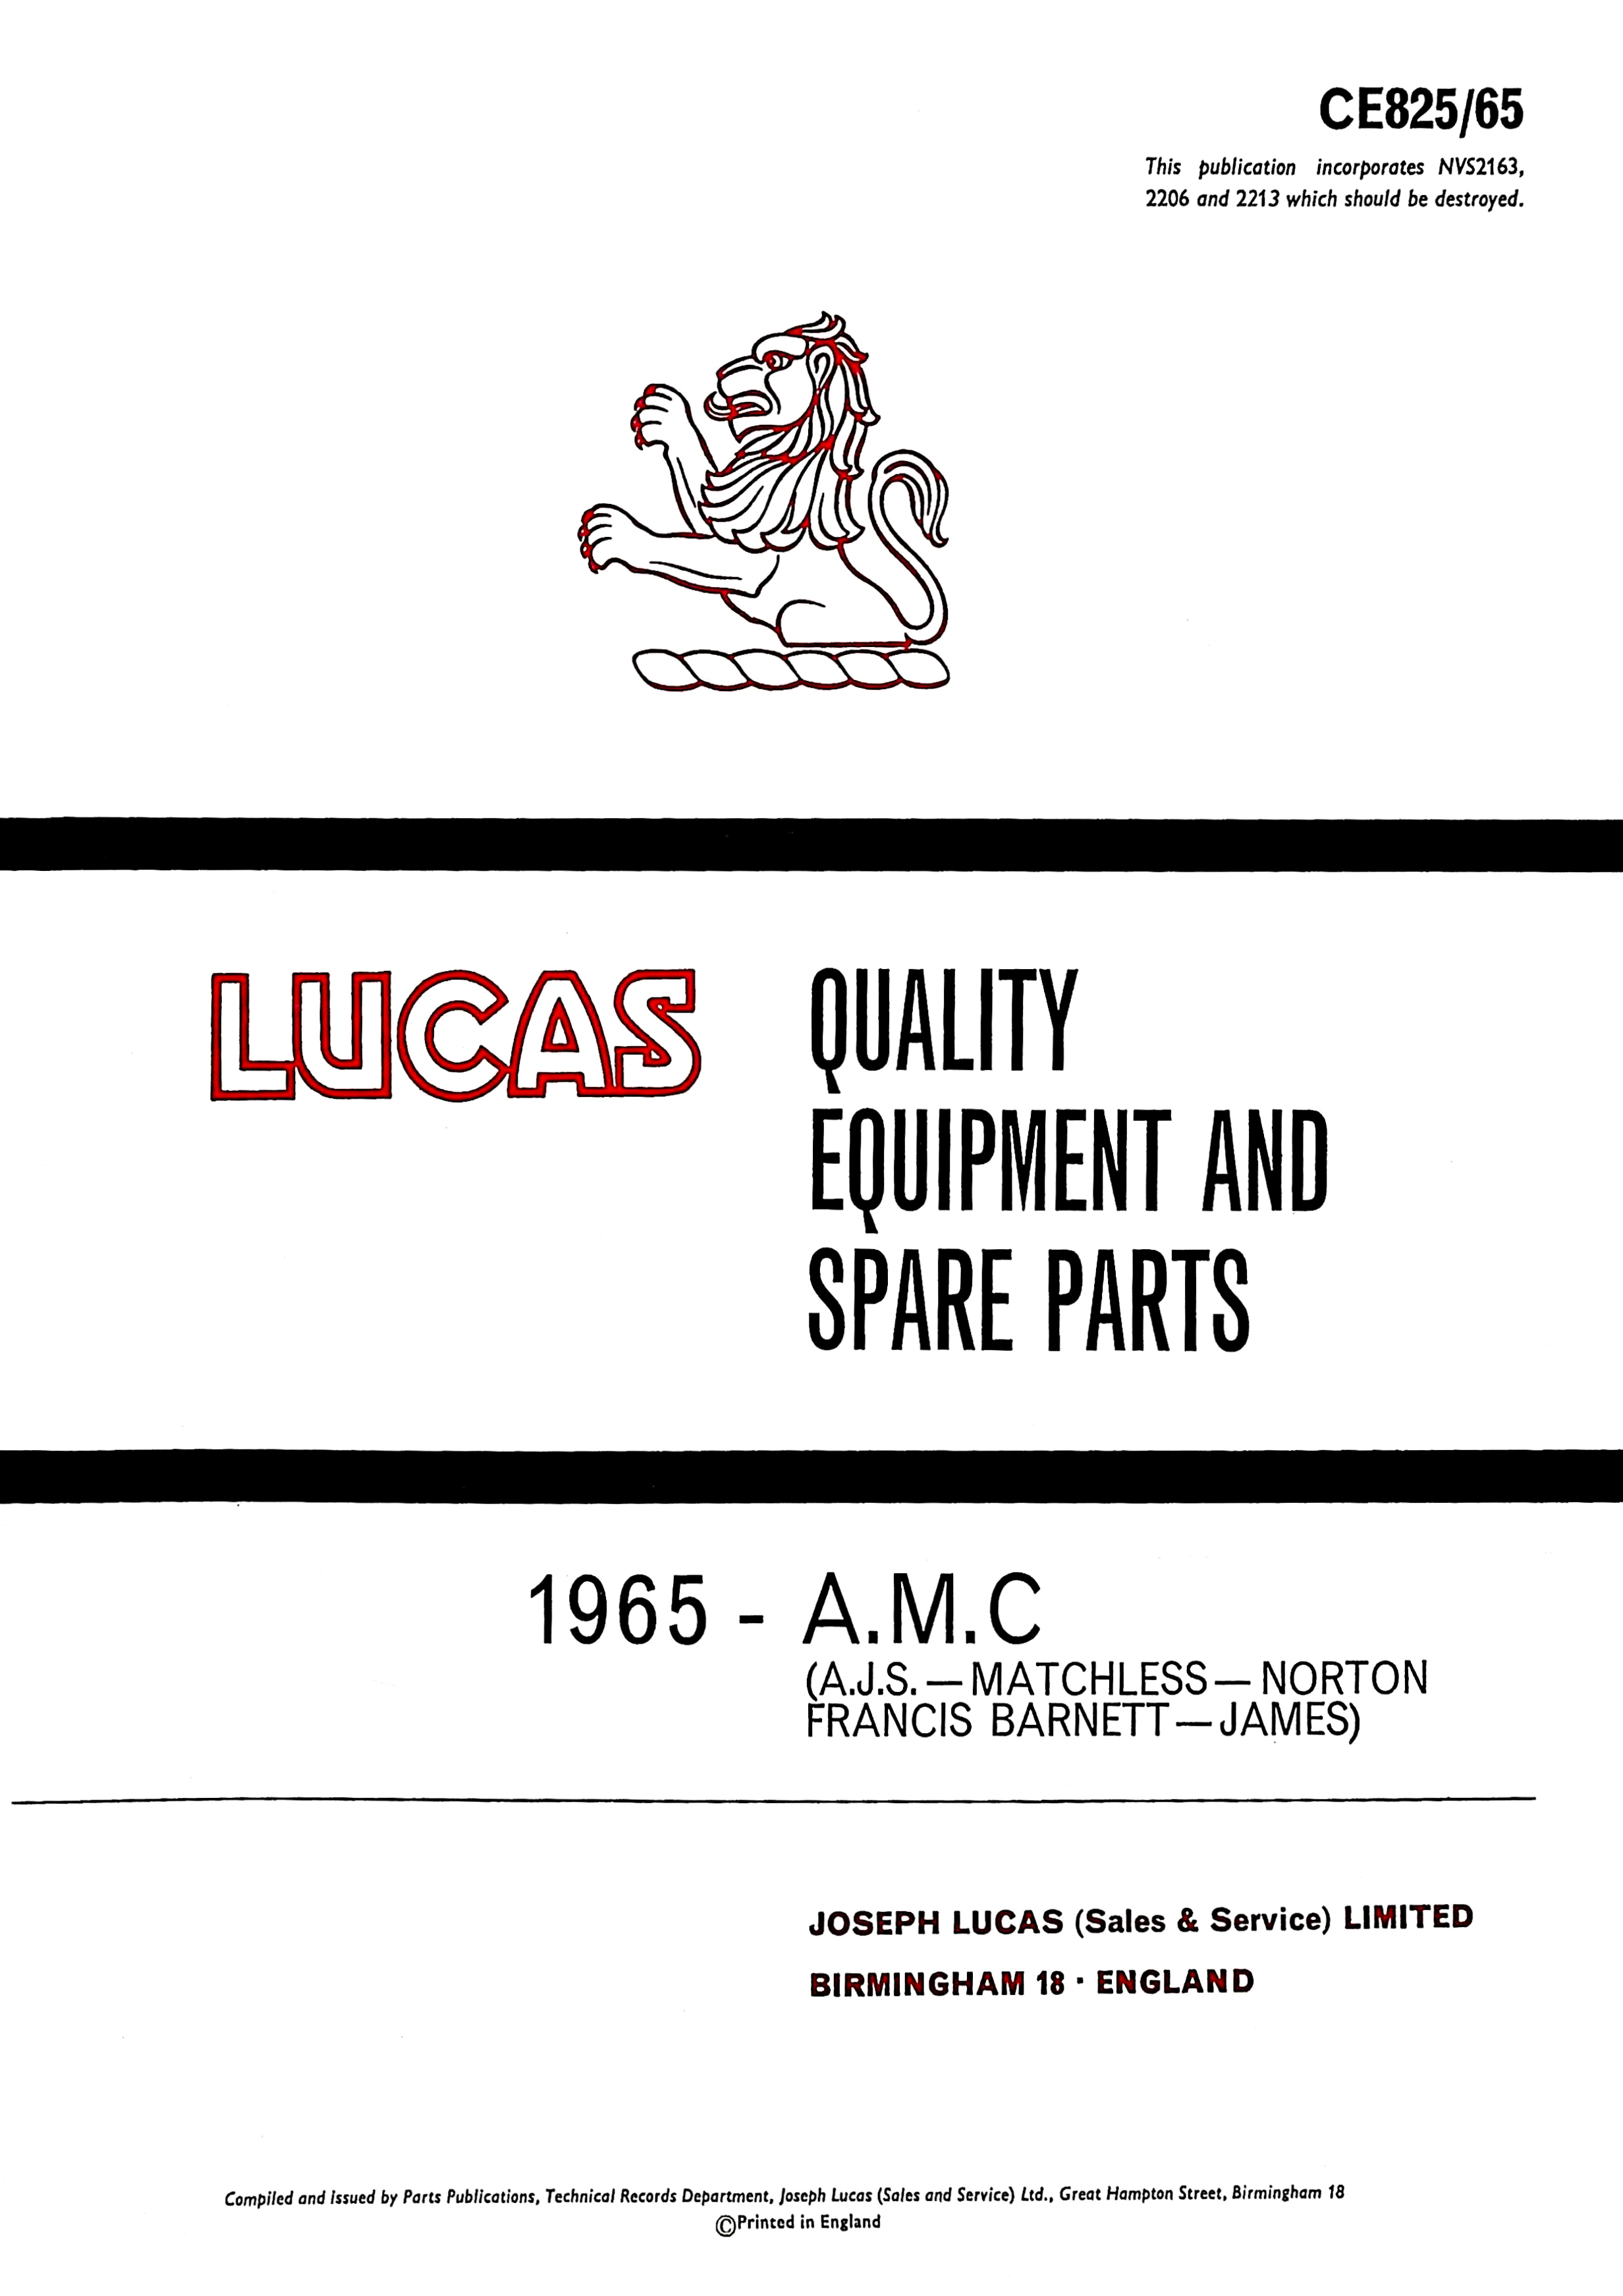 Lucas AMC 1965 Equipment & Spare Parts